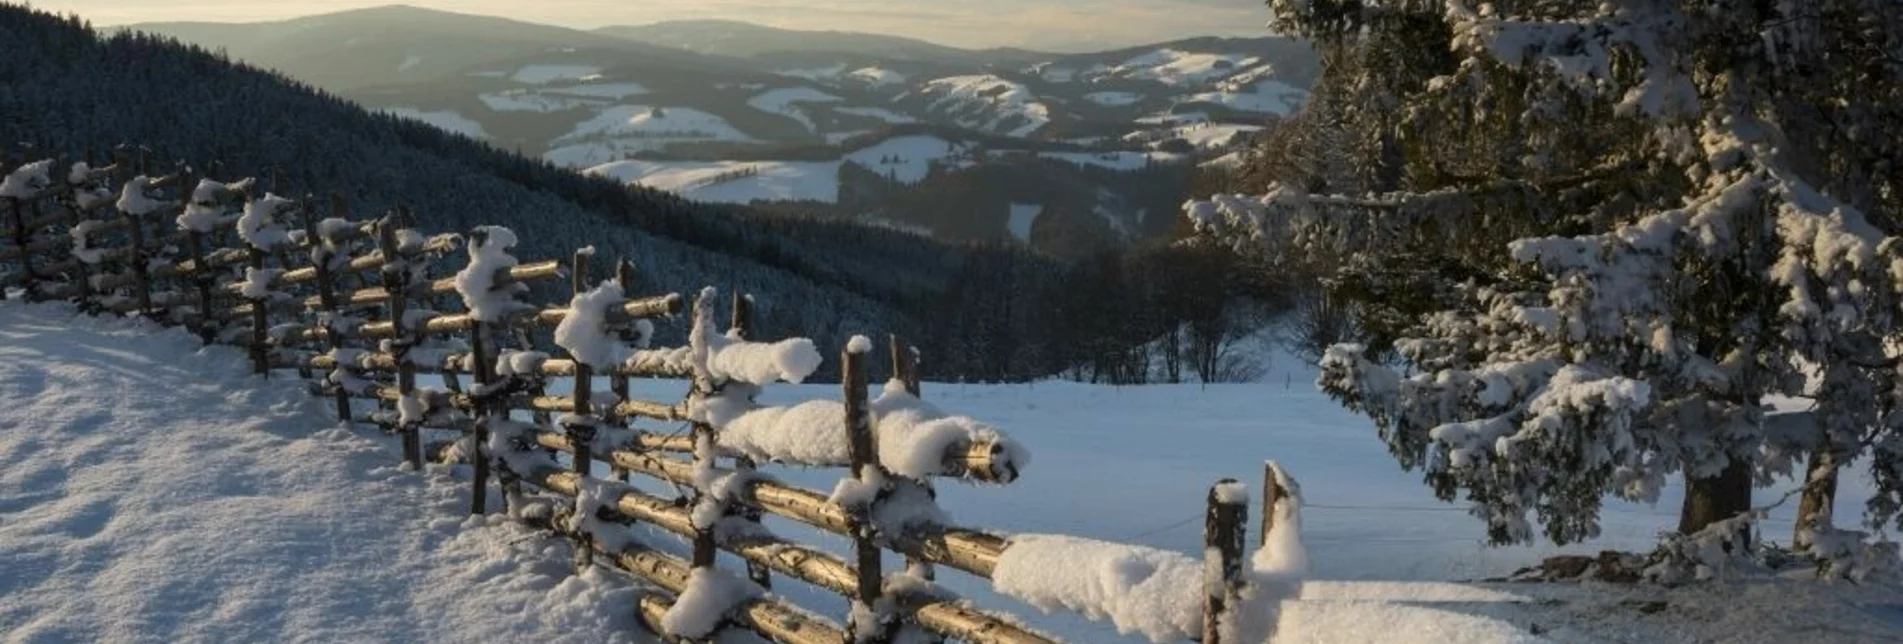 Winterwandern Winterwanderweg vom Orthofer zum Berger - Touren-Impression #1 | © Gasthof Orthofer